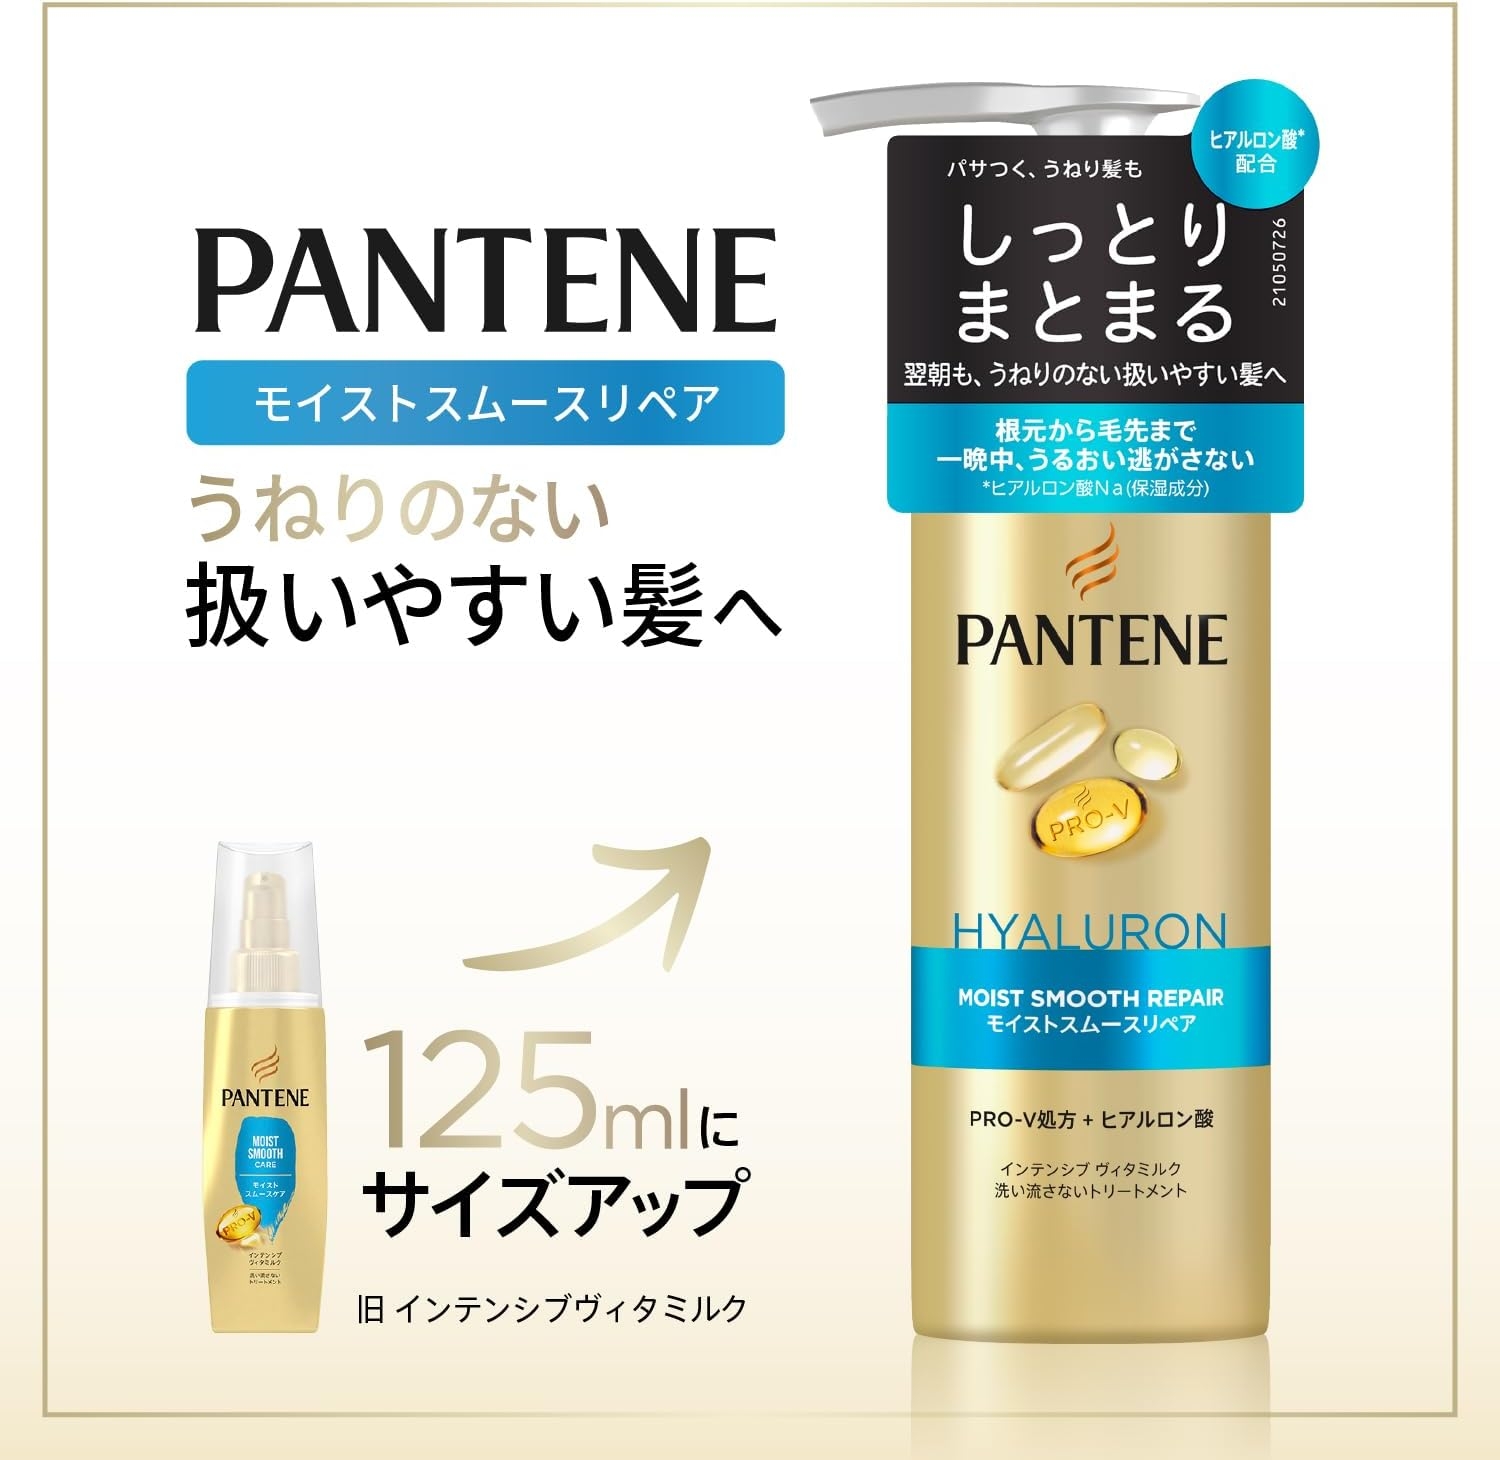 PANTENE(パンテーン) モイストスムースリペア インテンシブ ヴィタミルクの商品画像2 